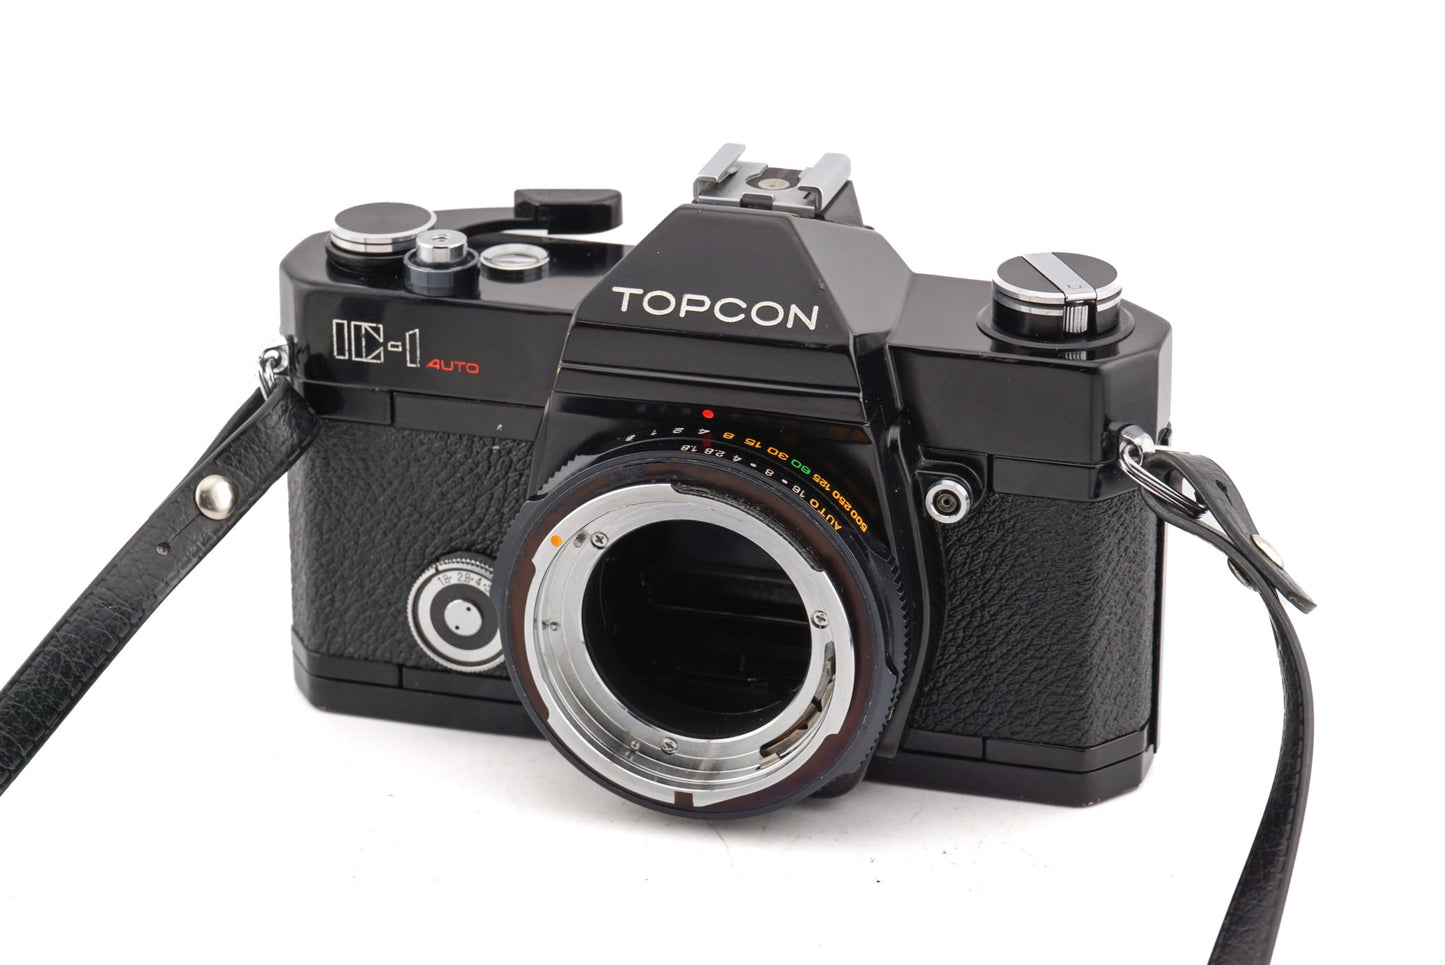 Topcon IC-1 Auto - Camera